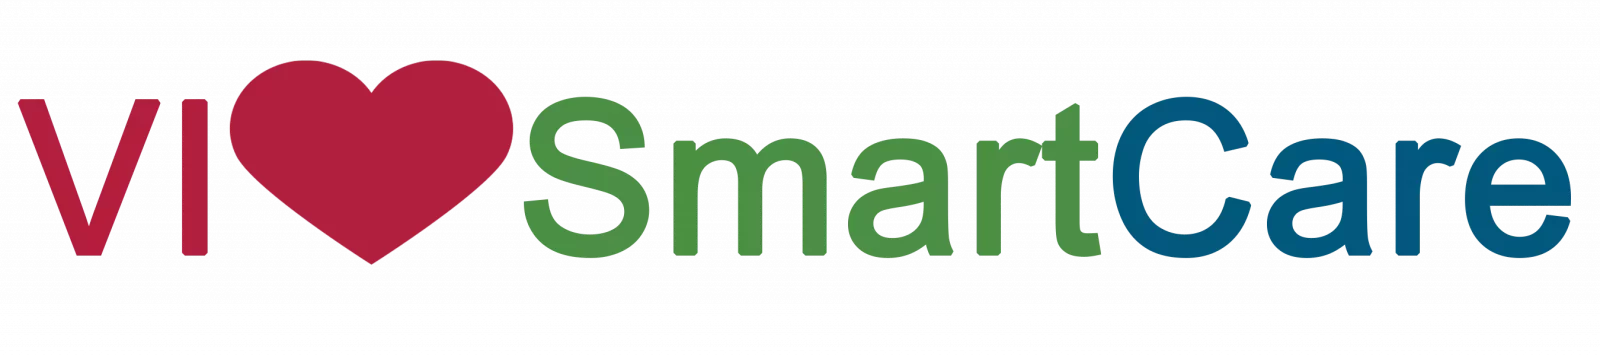 Elan-VI-smart-care-logo-image